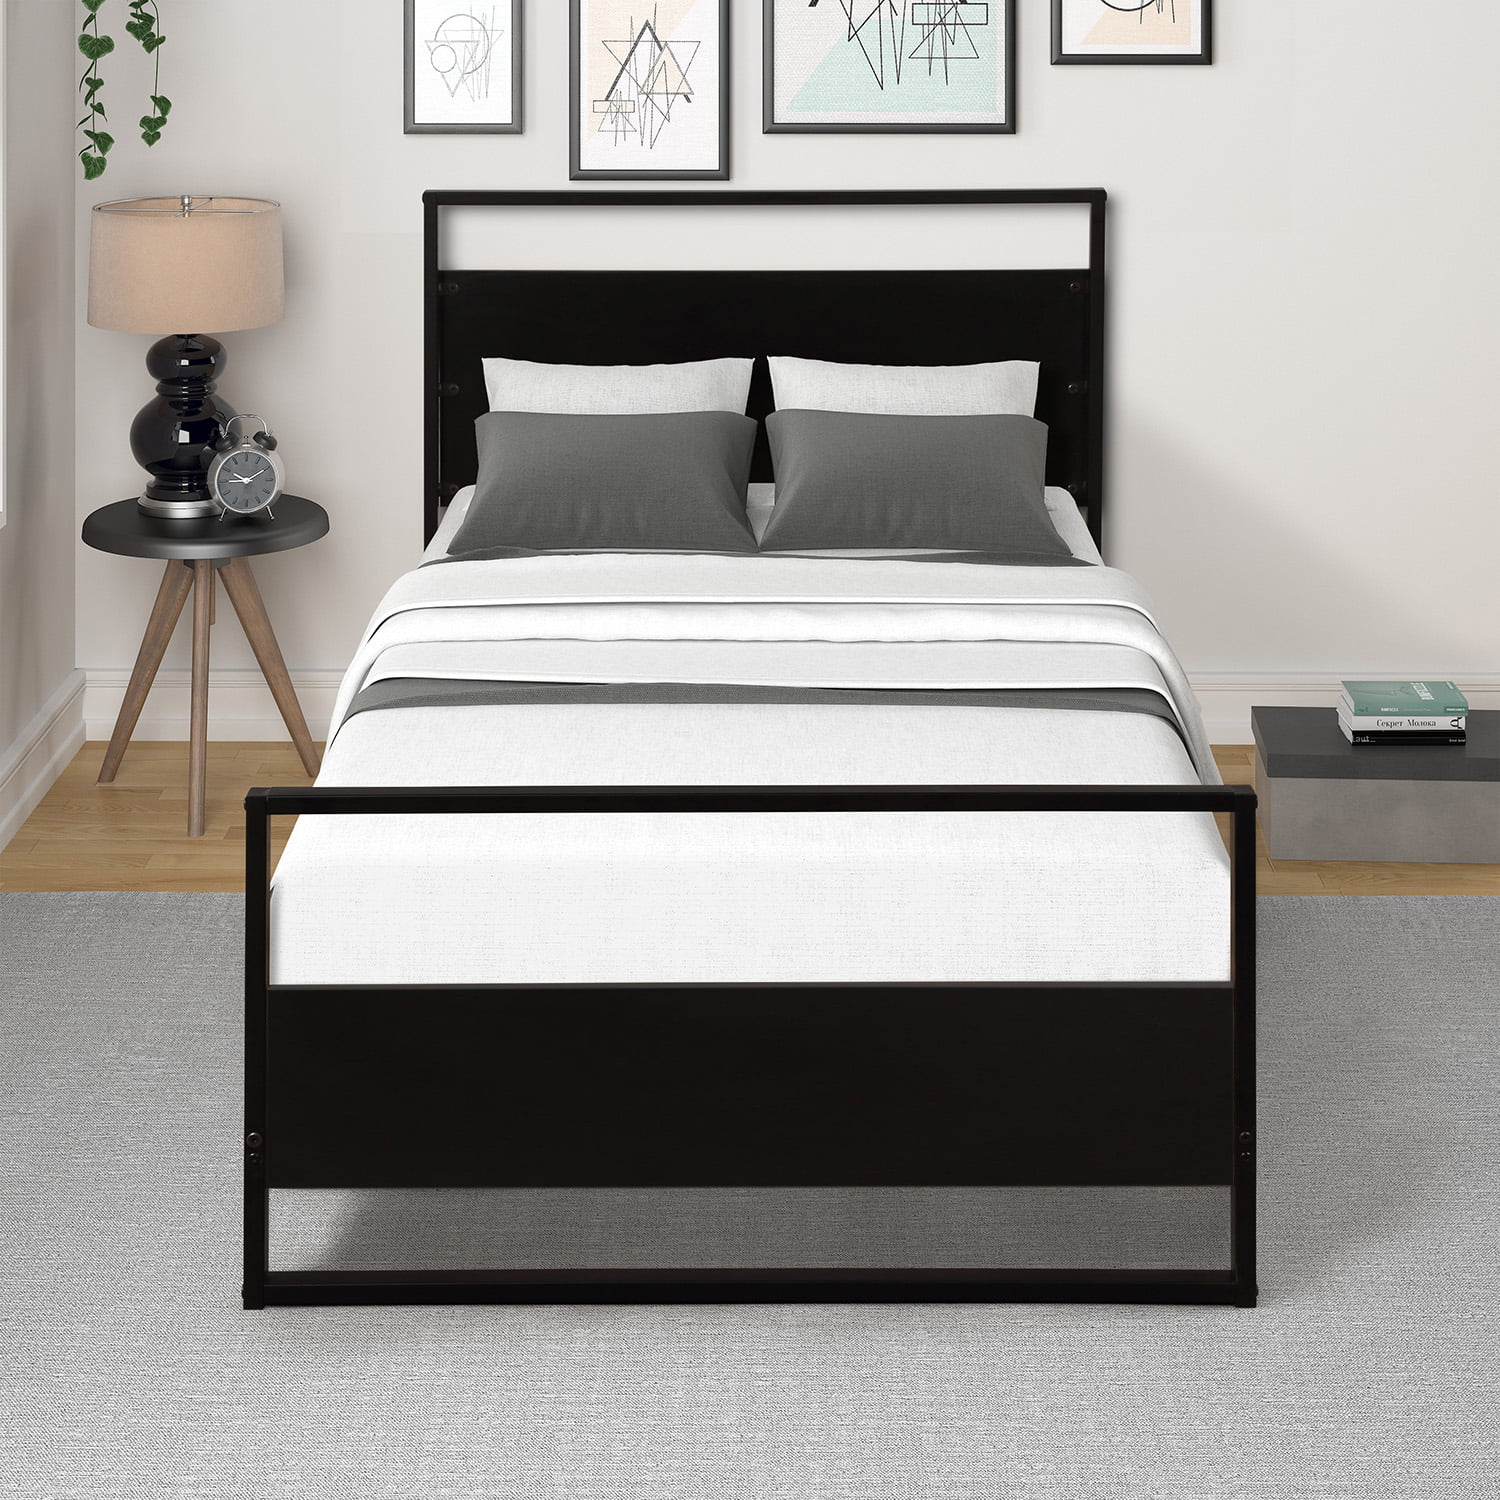 Twin Size Metal Bed Frame Upholstered Headboard Platform Kids Bedroom Furniture 